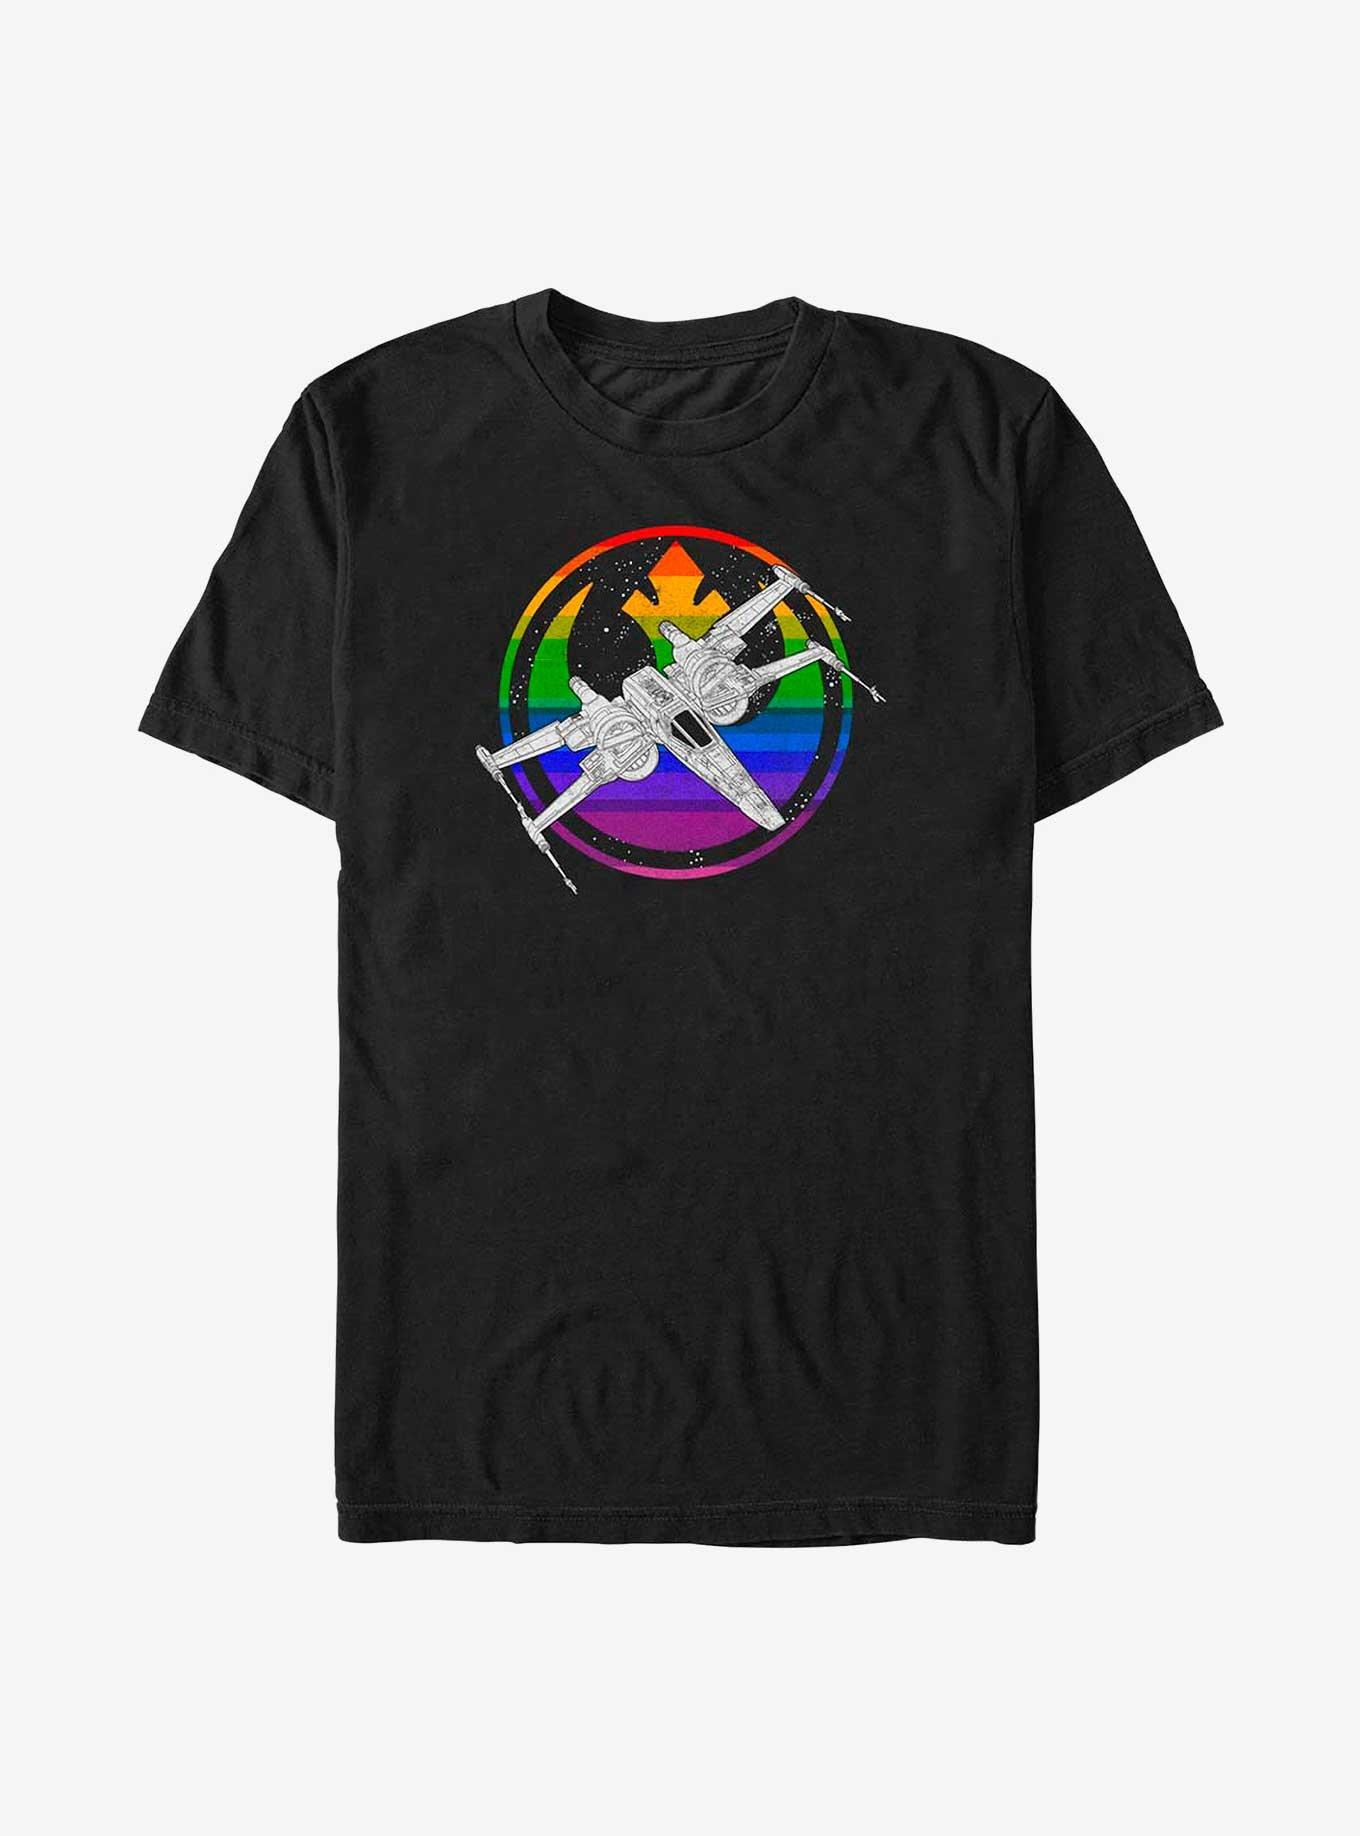 Star Wars X Wing Pride Big & Tall T-Shirt, BLACK, hi-res